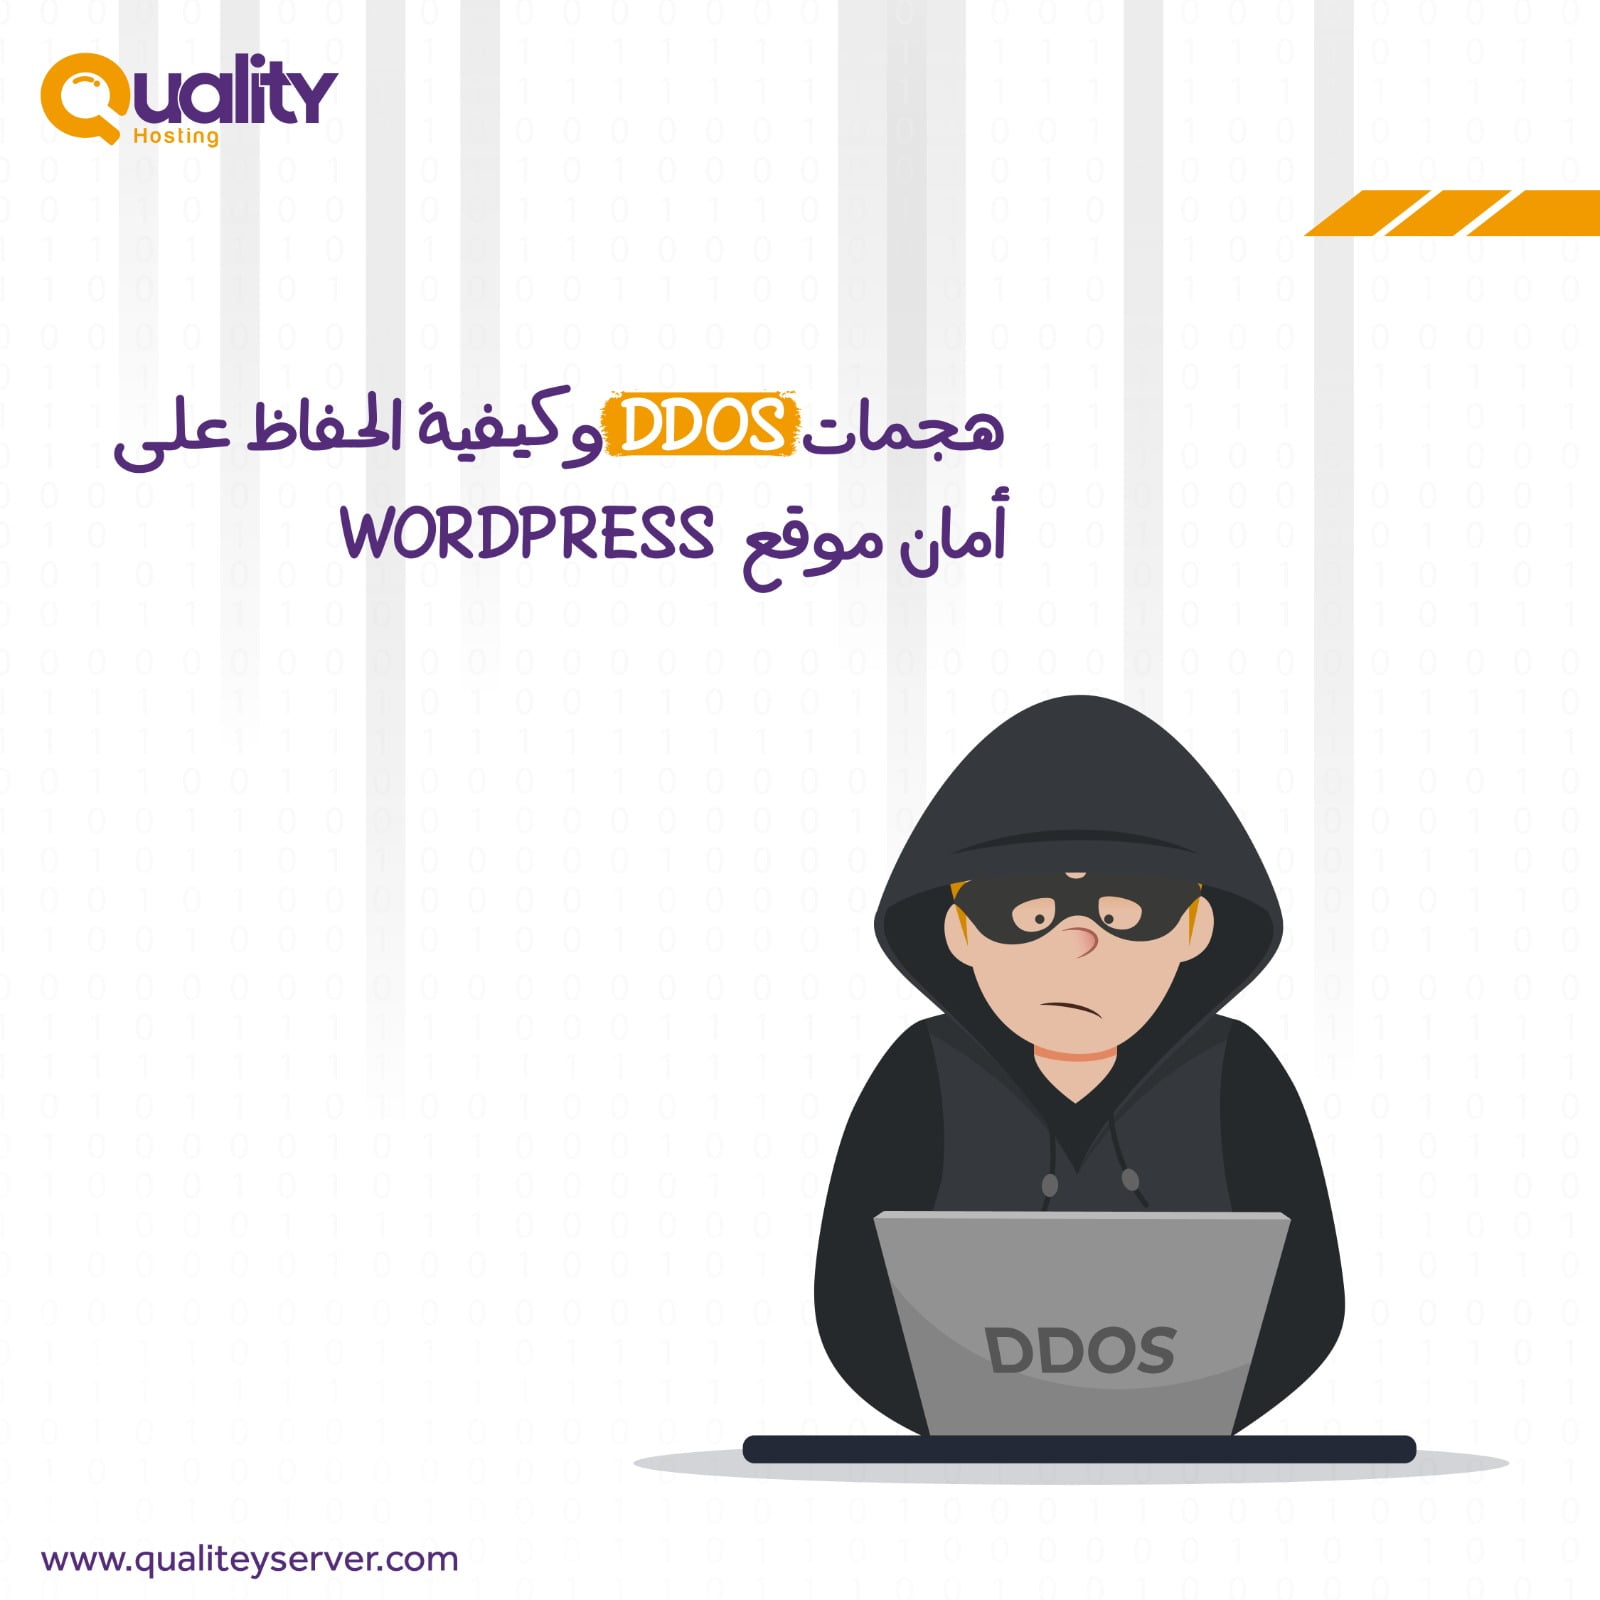 هجمات DDOS وكيفية الحفاظ على أمان موقع WORDPRESS